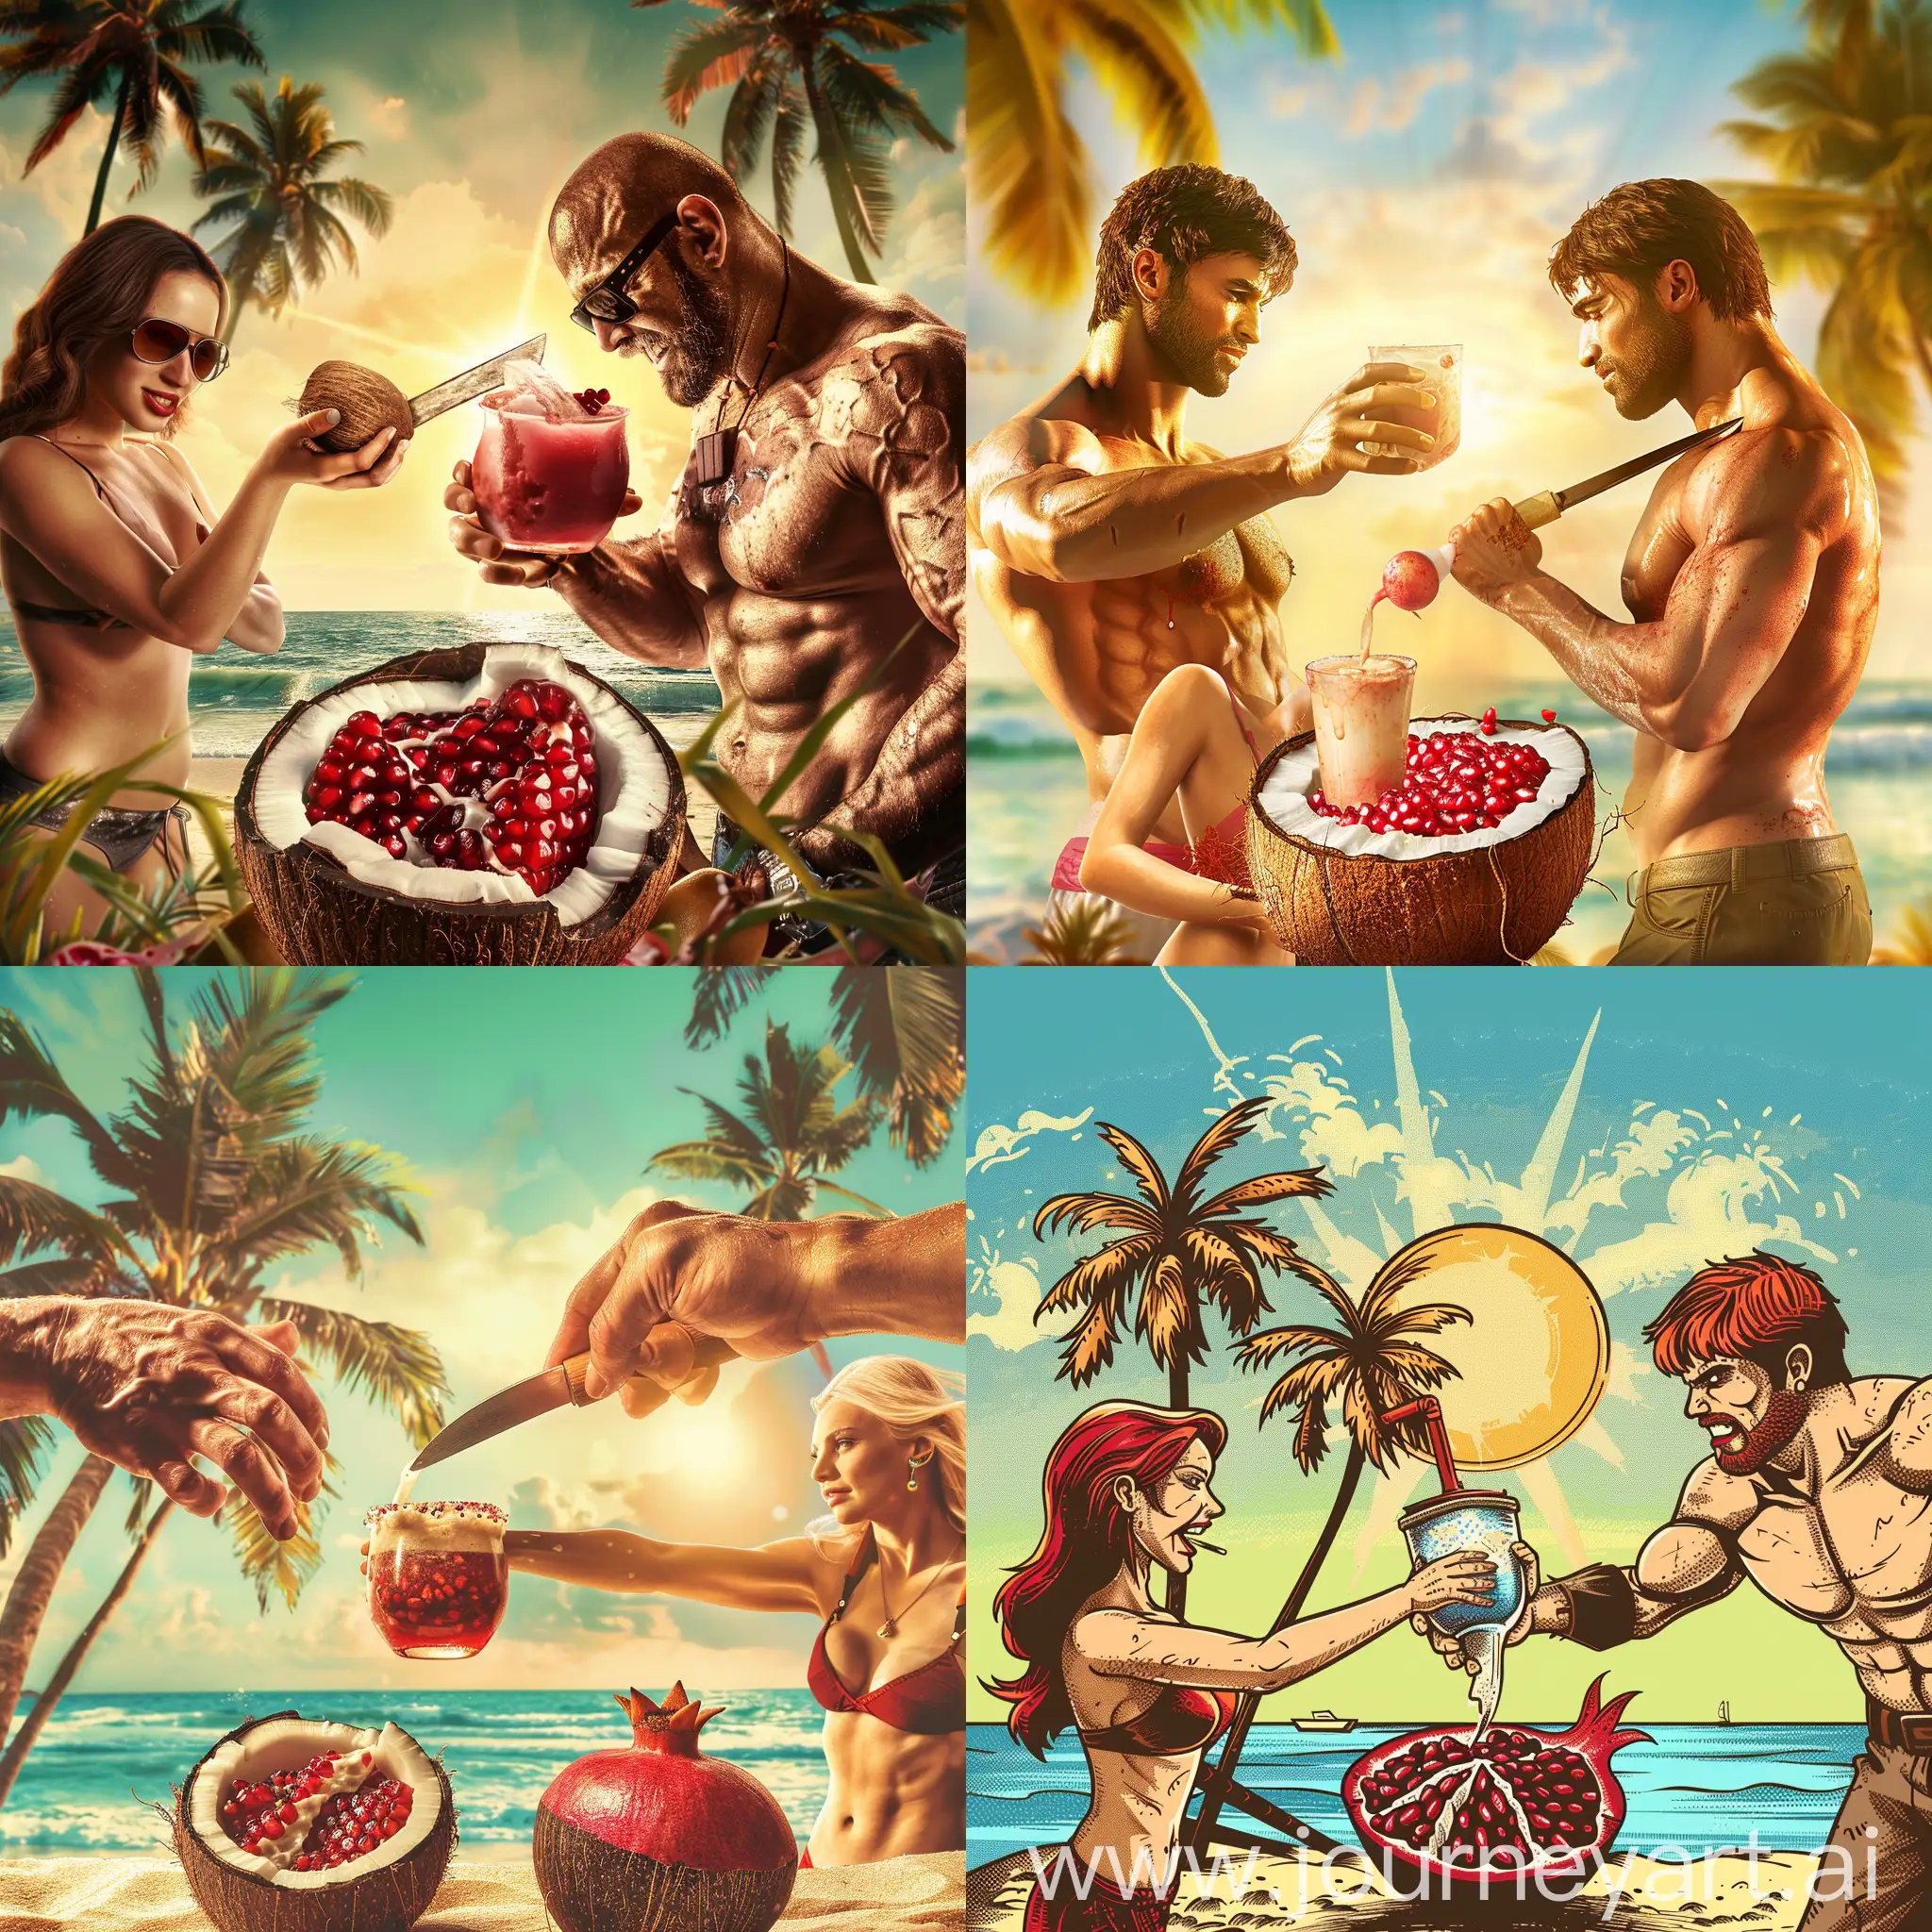 На фоне солнца пляжа пальмы кокосовый орех разломанный с фруктом граната напиток кокосовый в него выдавливает рукой гранат брутальный мужик с мачета   дает напиток девушке